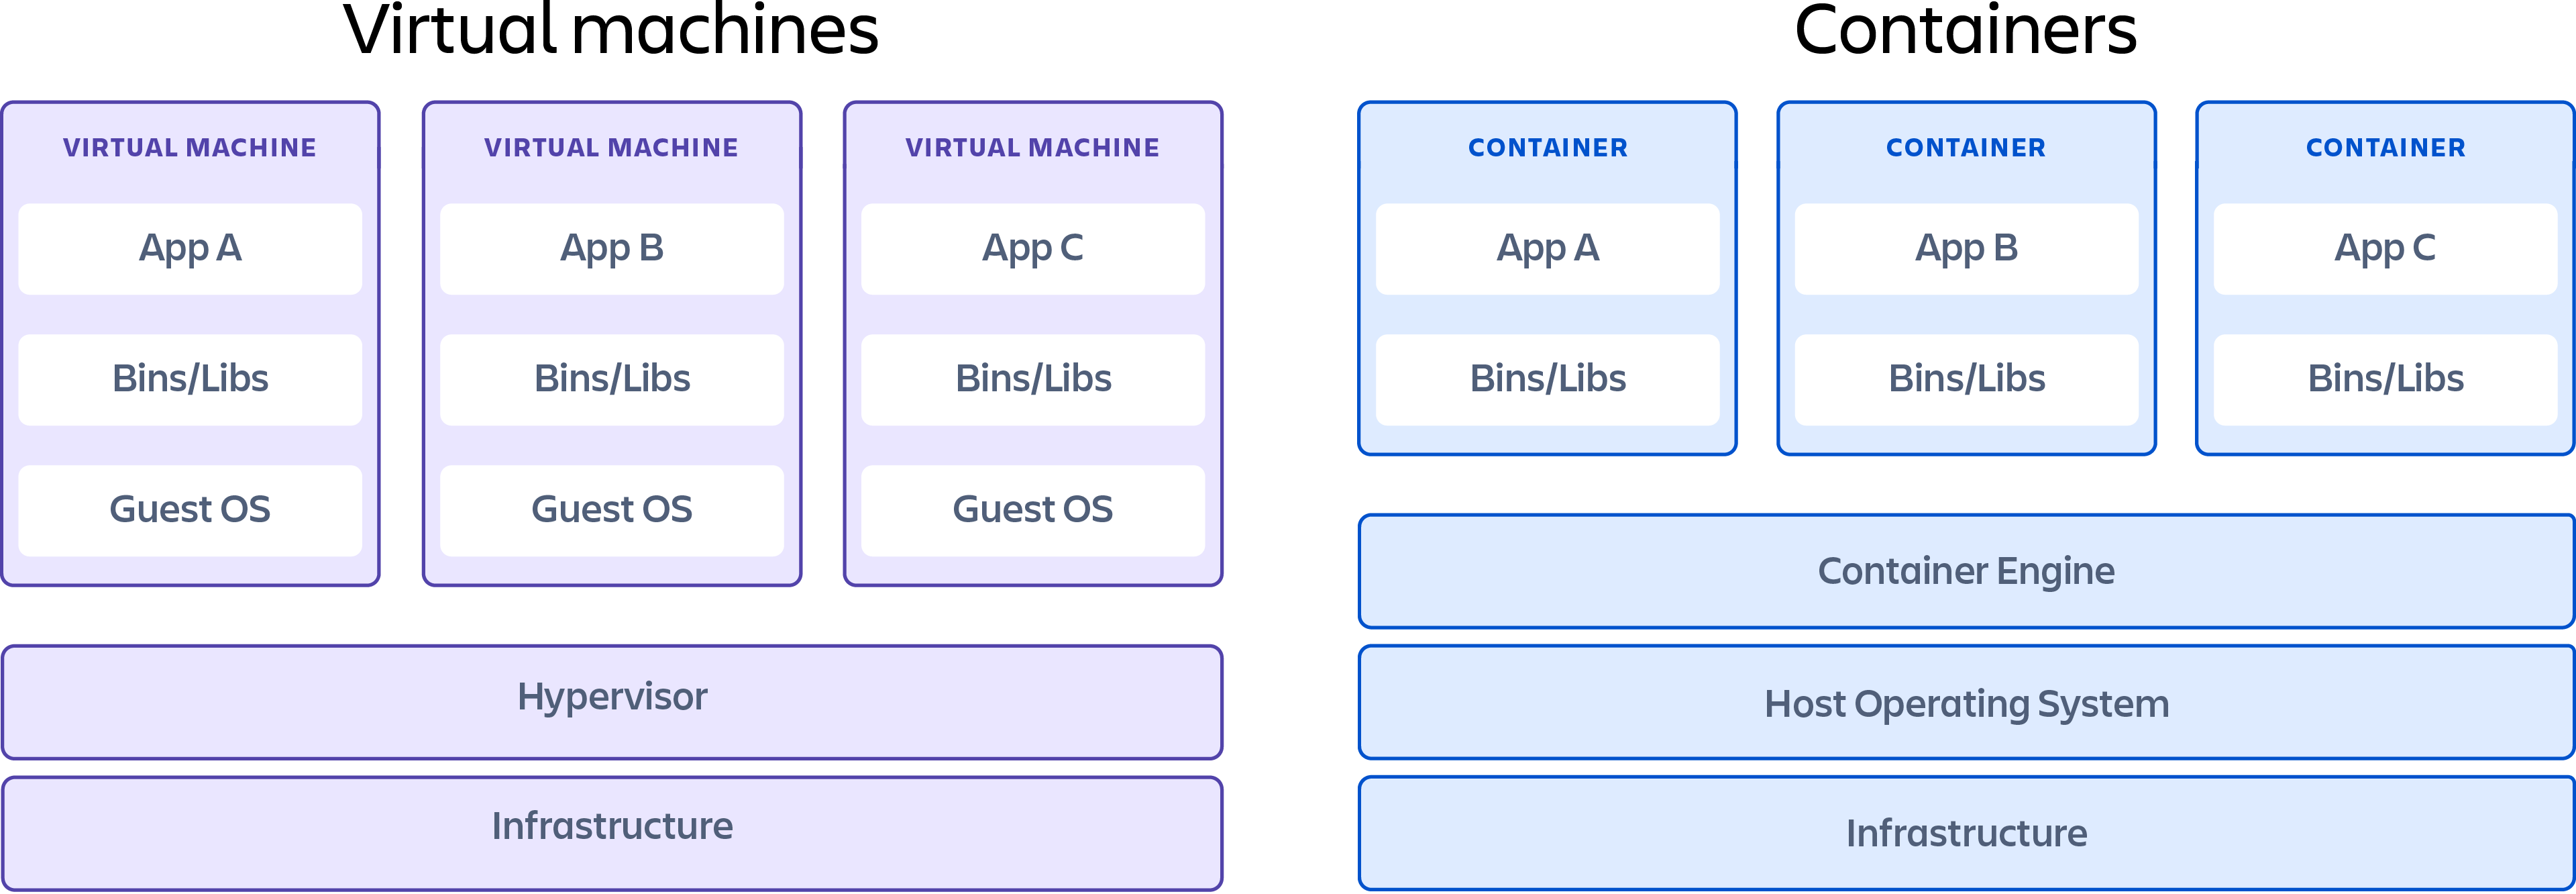 Een container die de verschillen tussen virtuele machines en containers laat zien.